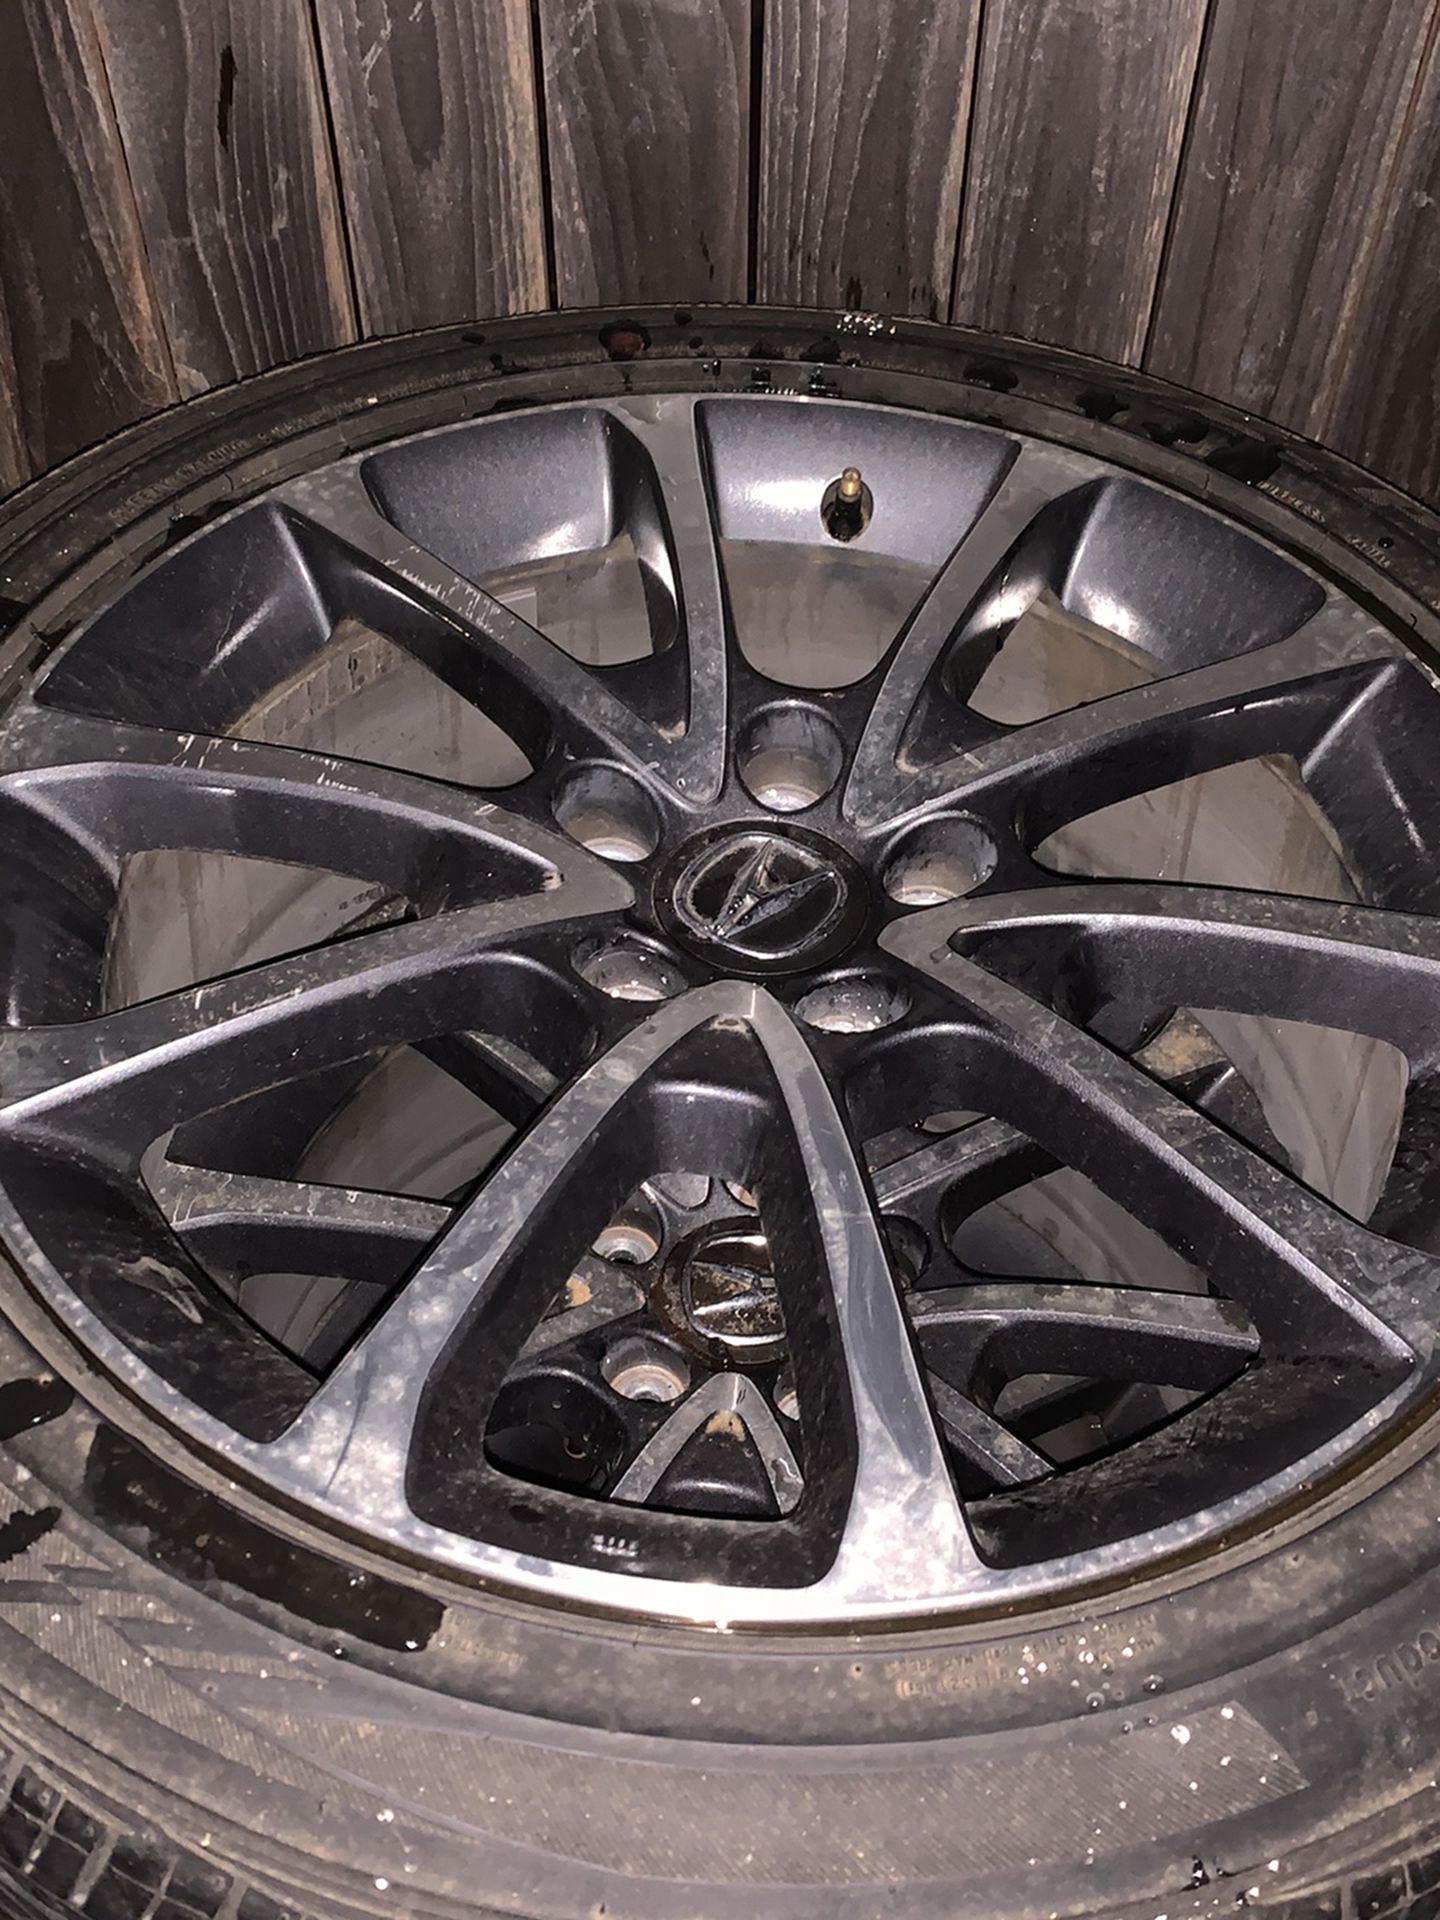 2017 Acura TLX OEM Wheels